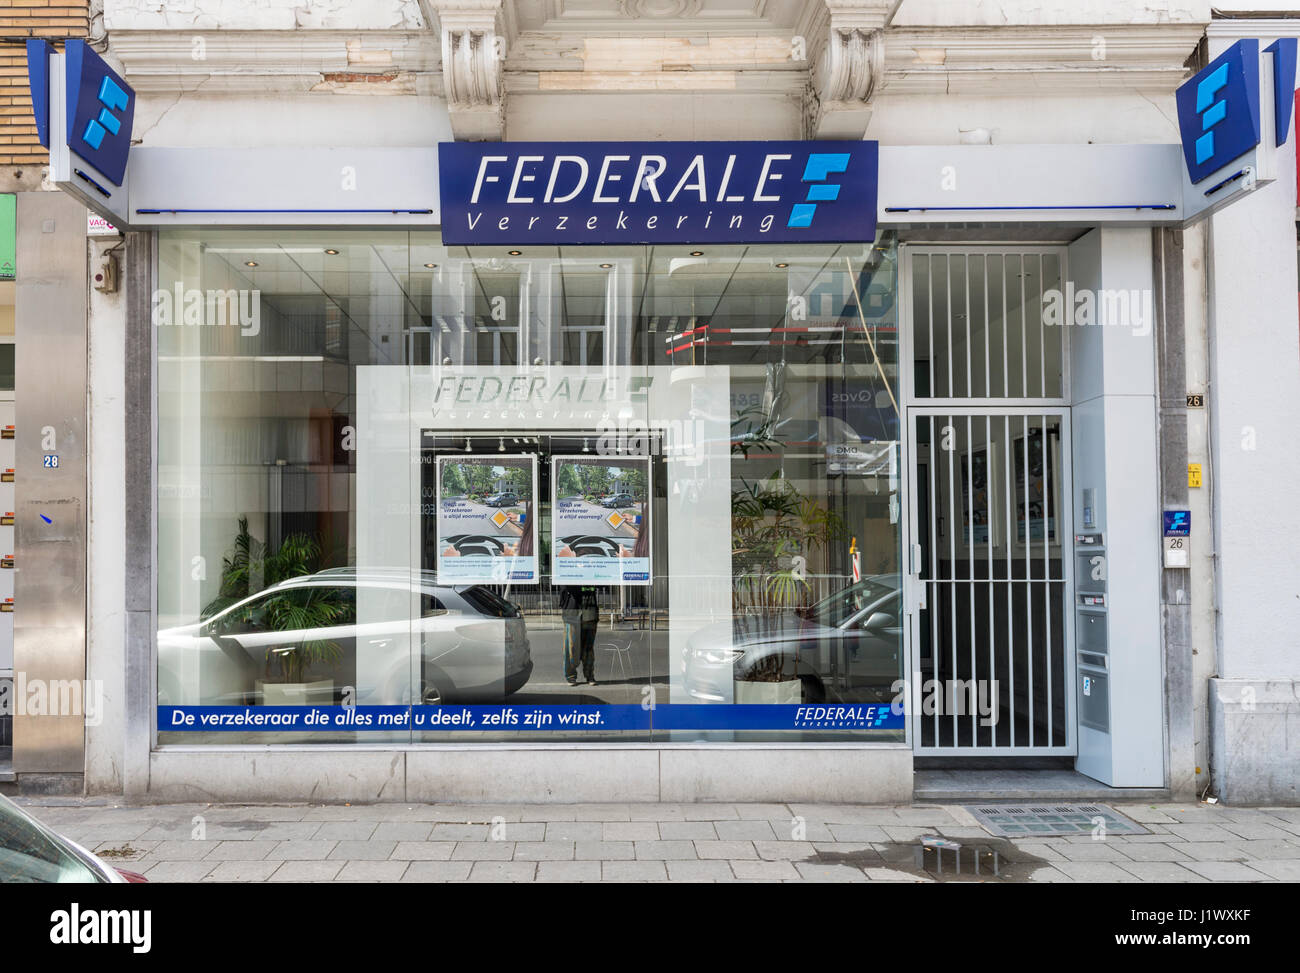 Branch of Federale verzekeringen in Antwerp Stock Photo